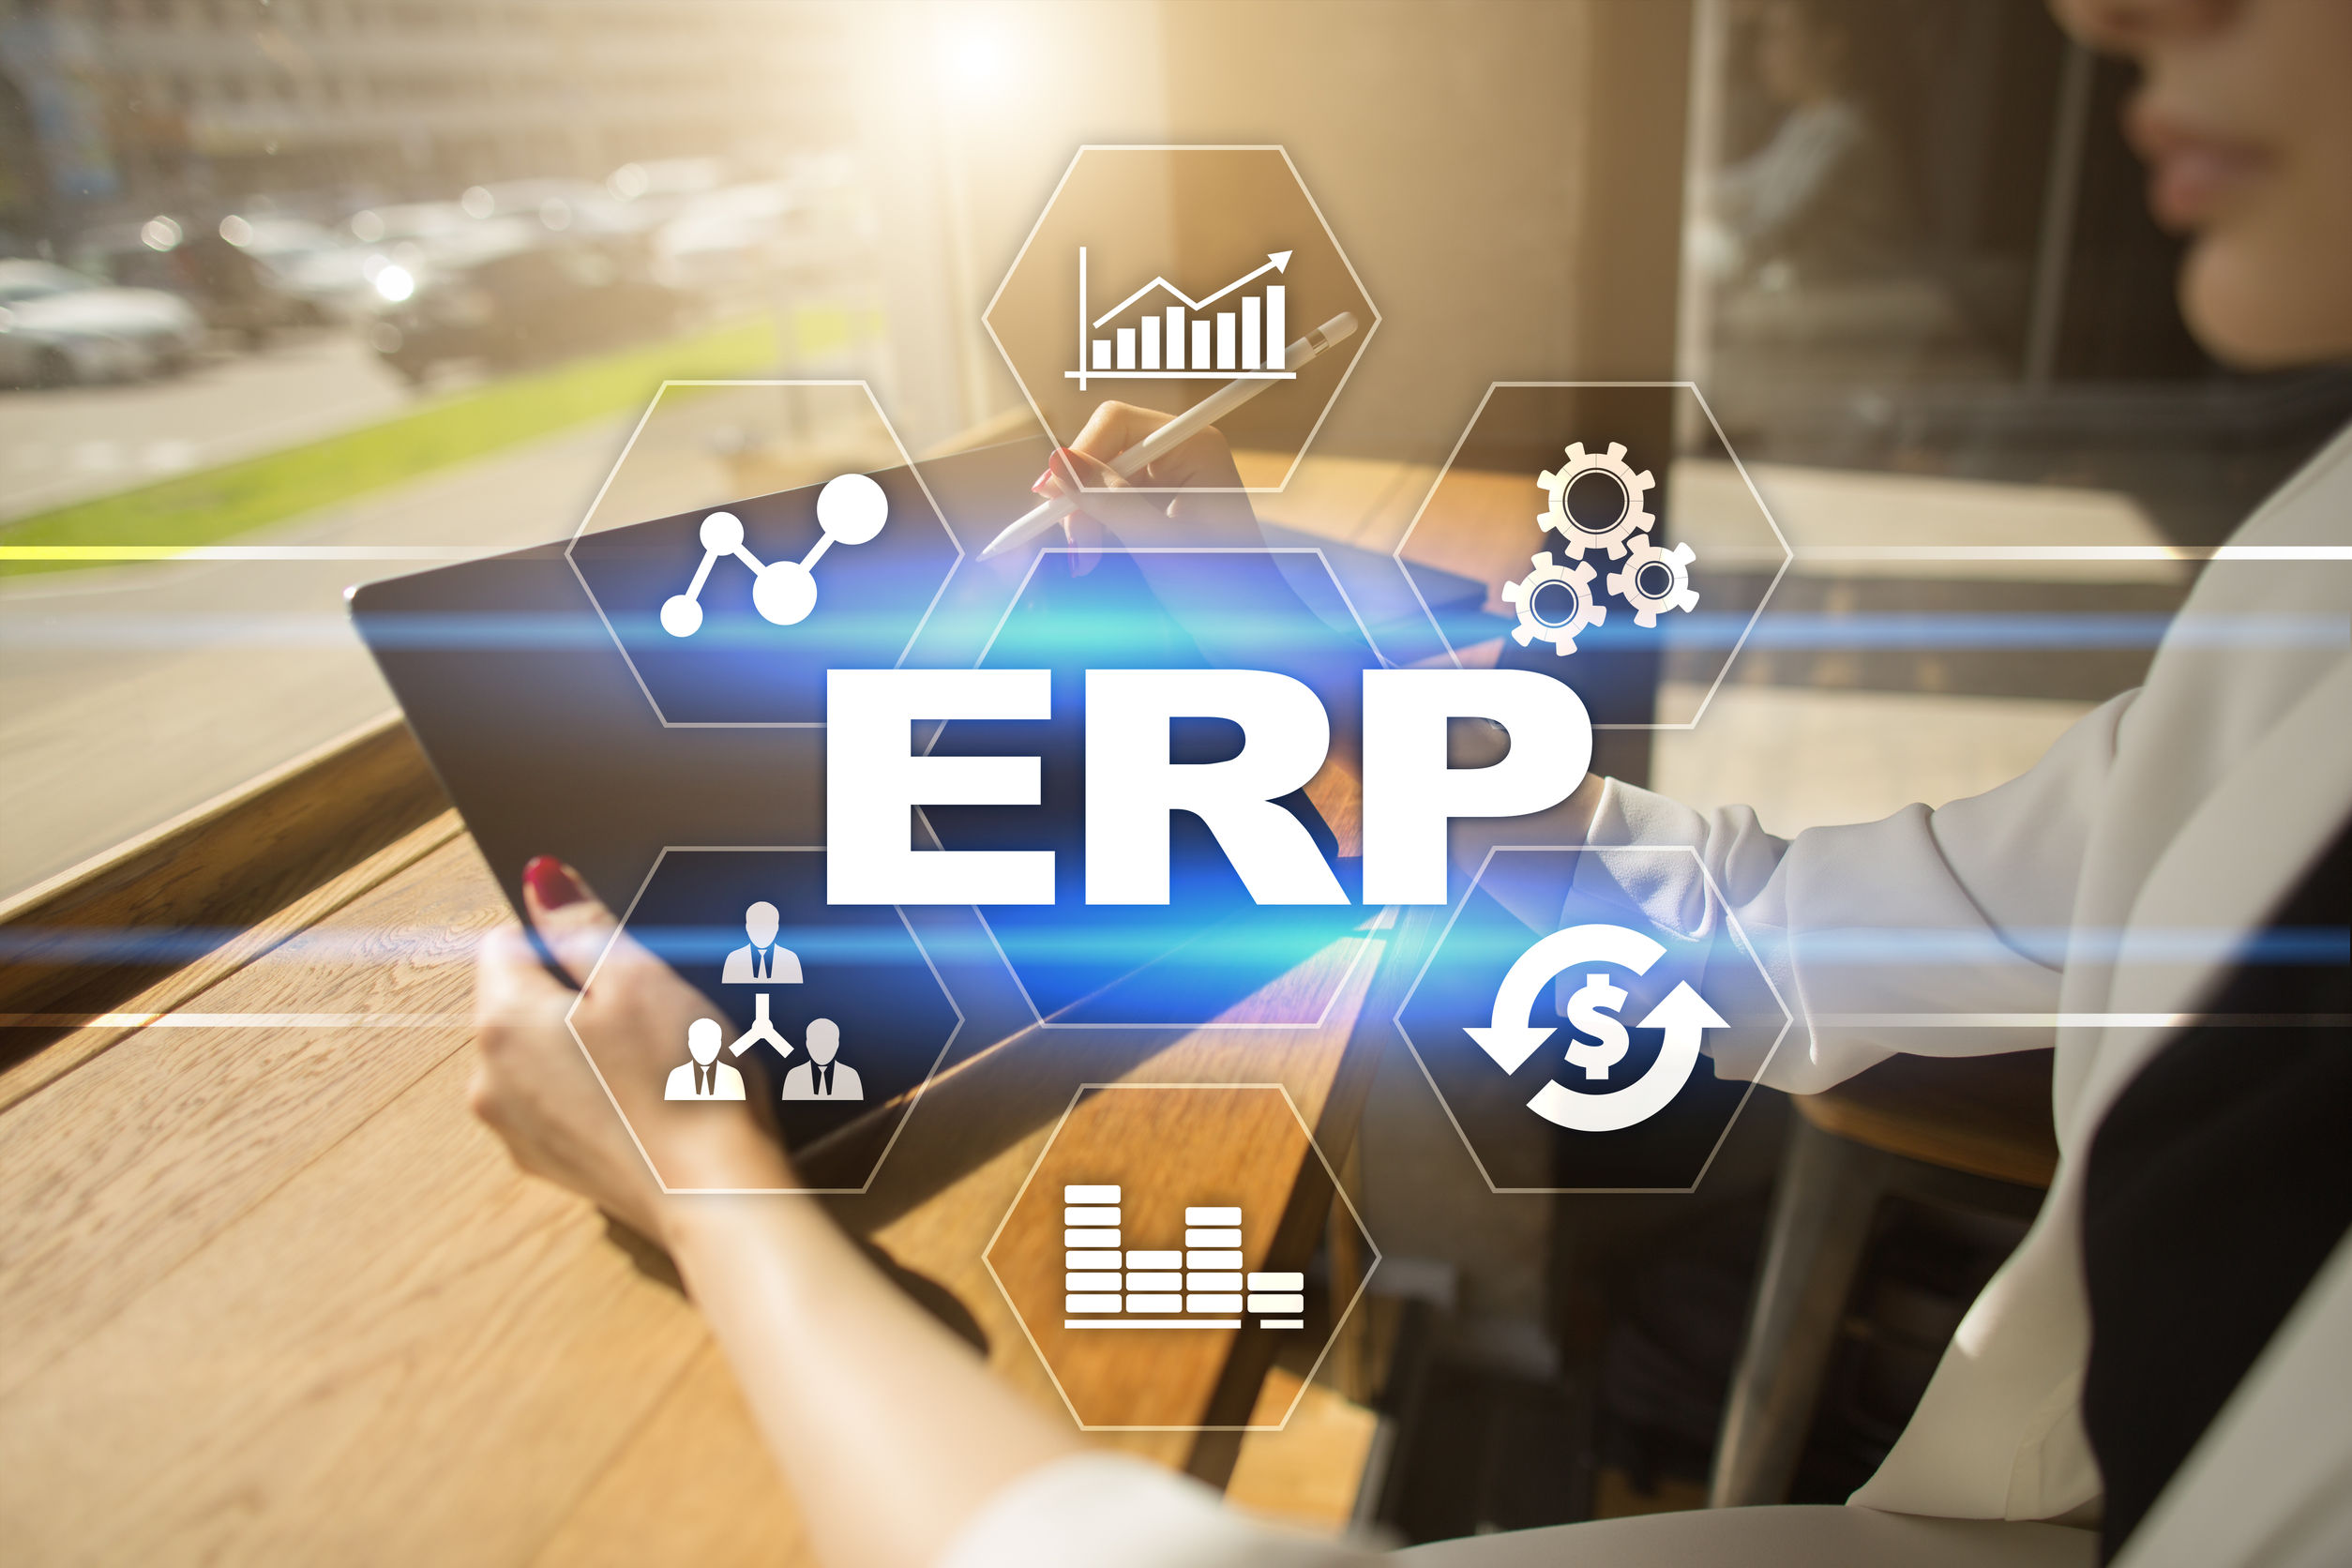 أنواع نظام ERP - أنظمة تخطيط موارد المؤسسات (ERP)